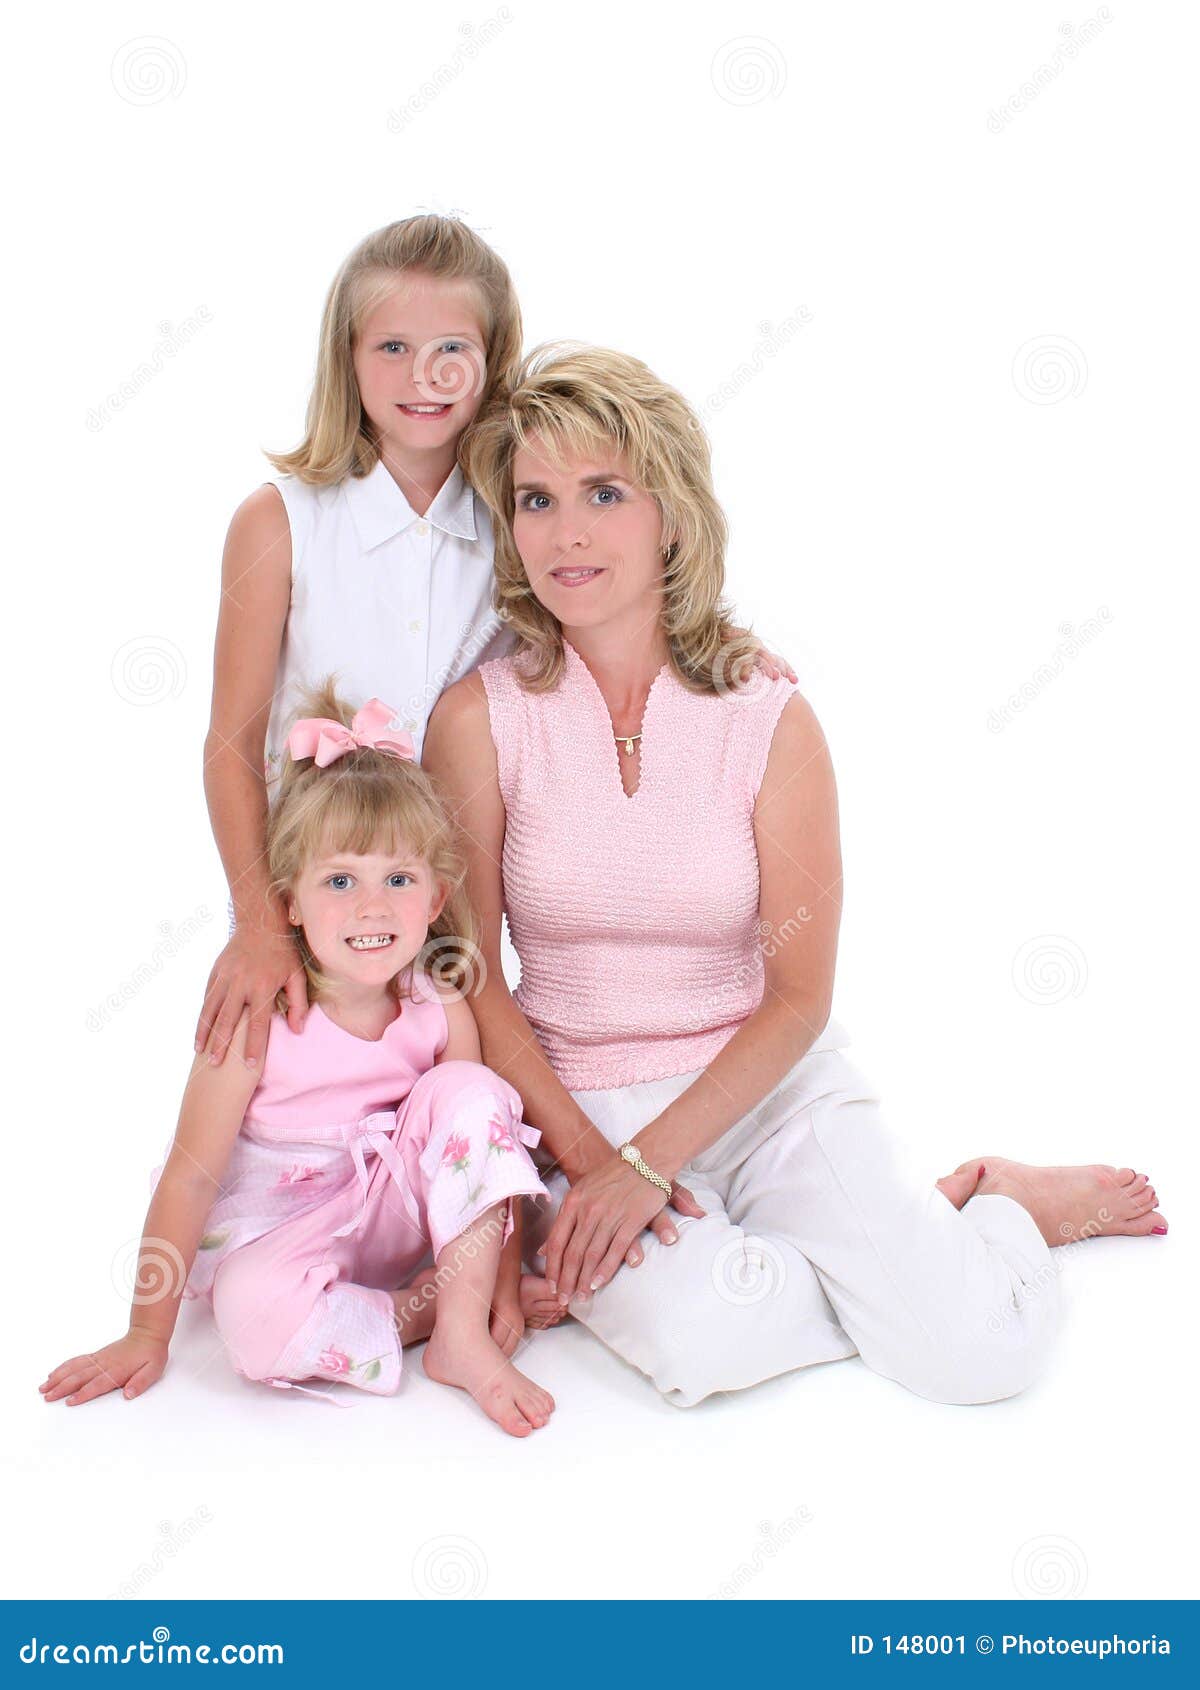 White daughter. Фотосессия с дочерью на белом фоне. Странная дочь на белом фоне.